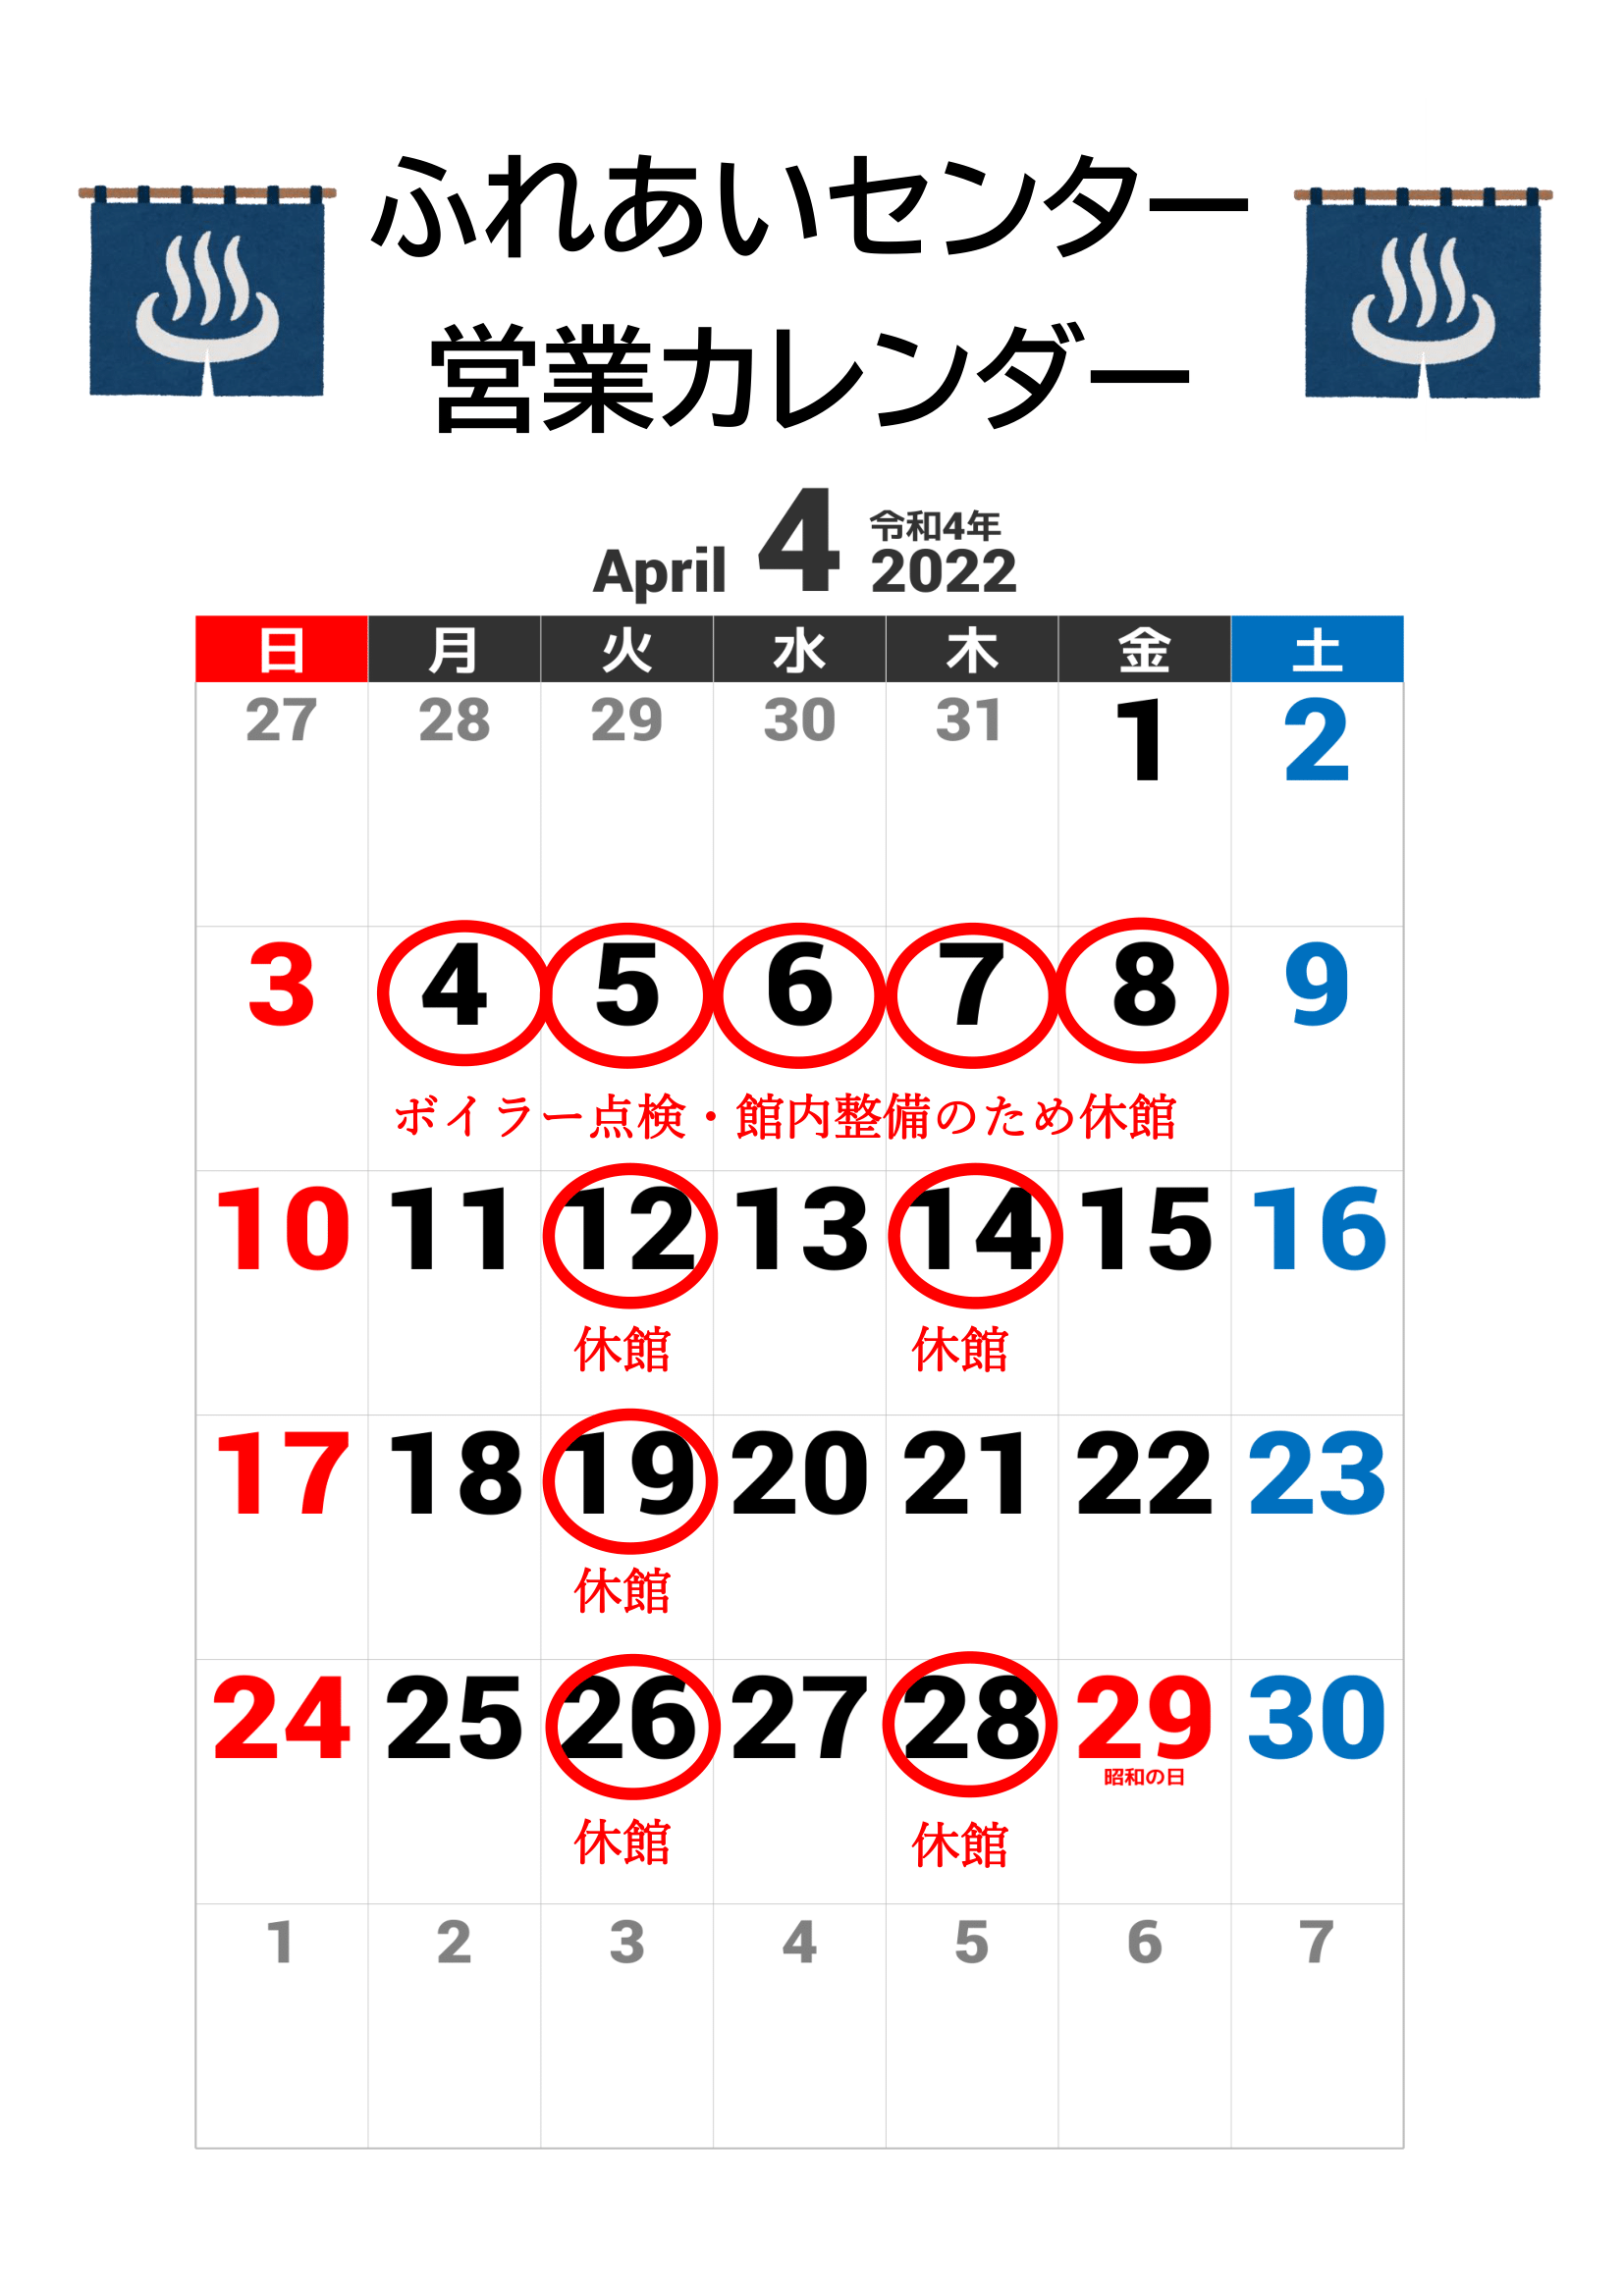 【ふれあいセンター】4月の営業カレンダー